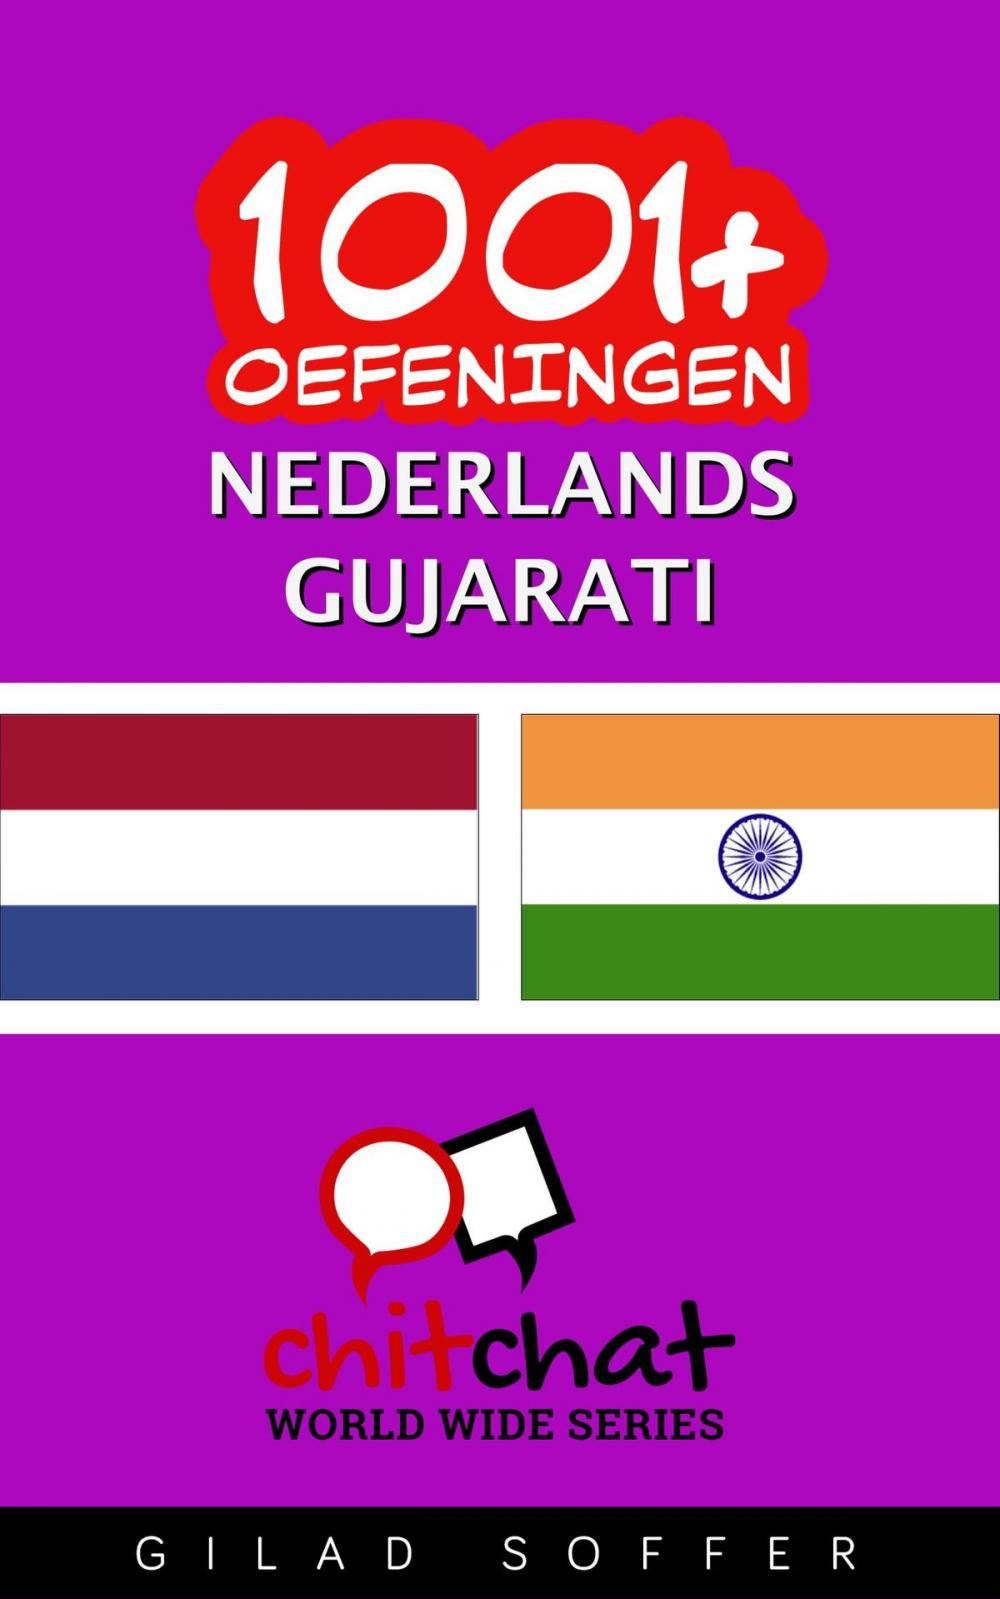 Big bigCover of 1001+ oefeningen nederlands - Gujarati